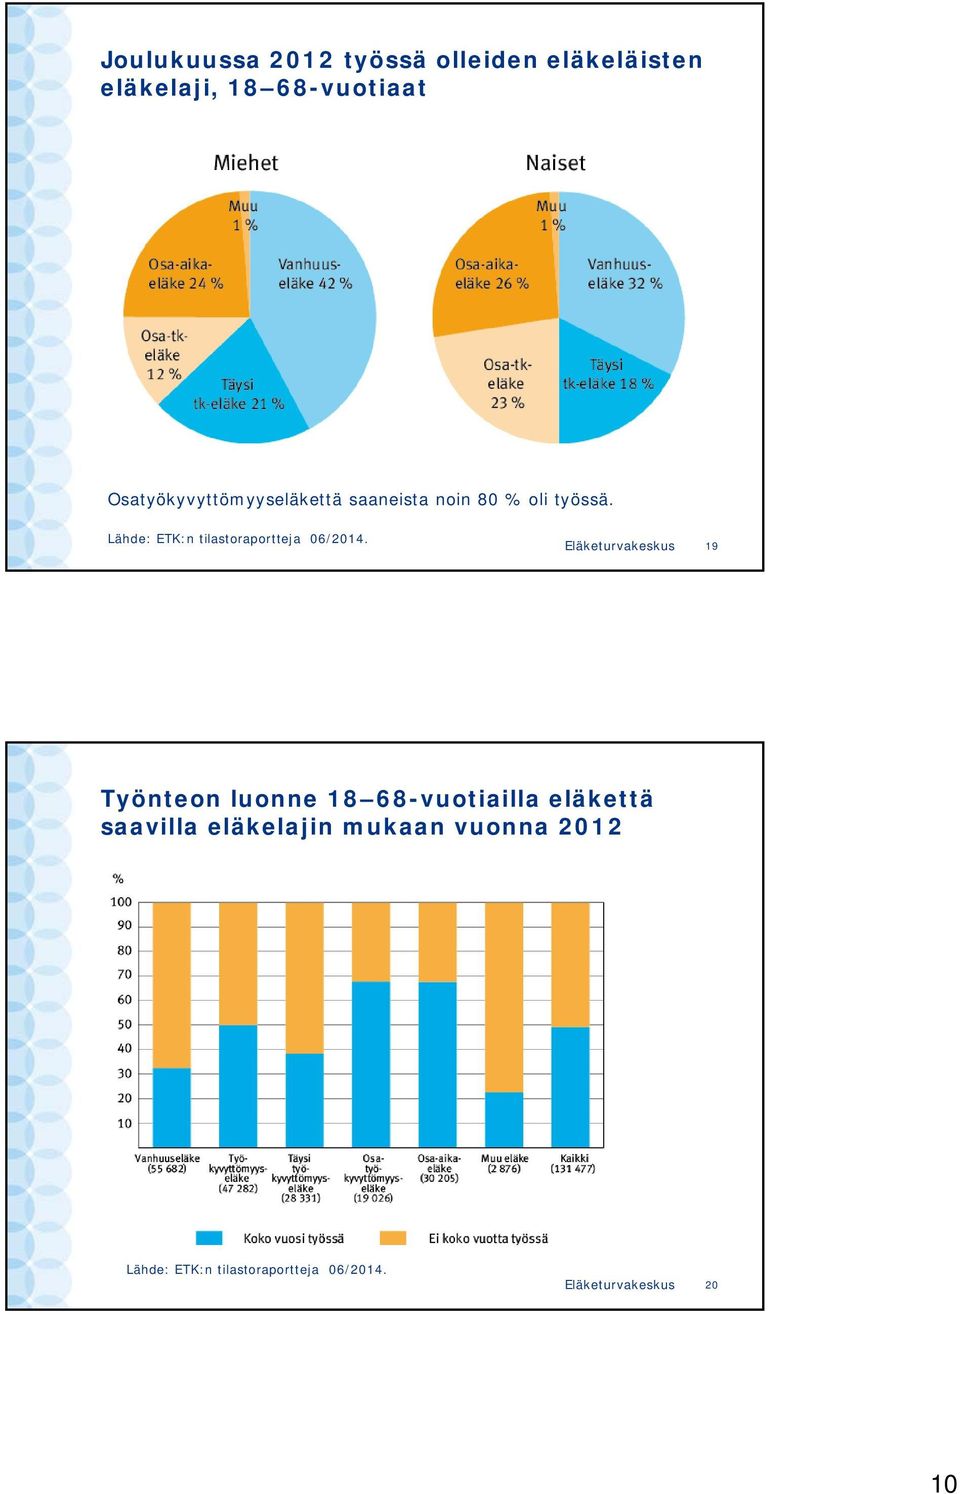 Lähde: ETK:n tilastoraportteja 06/2014.